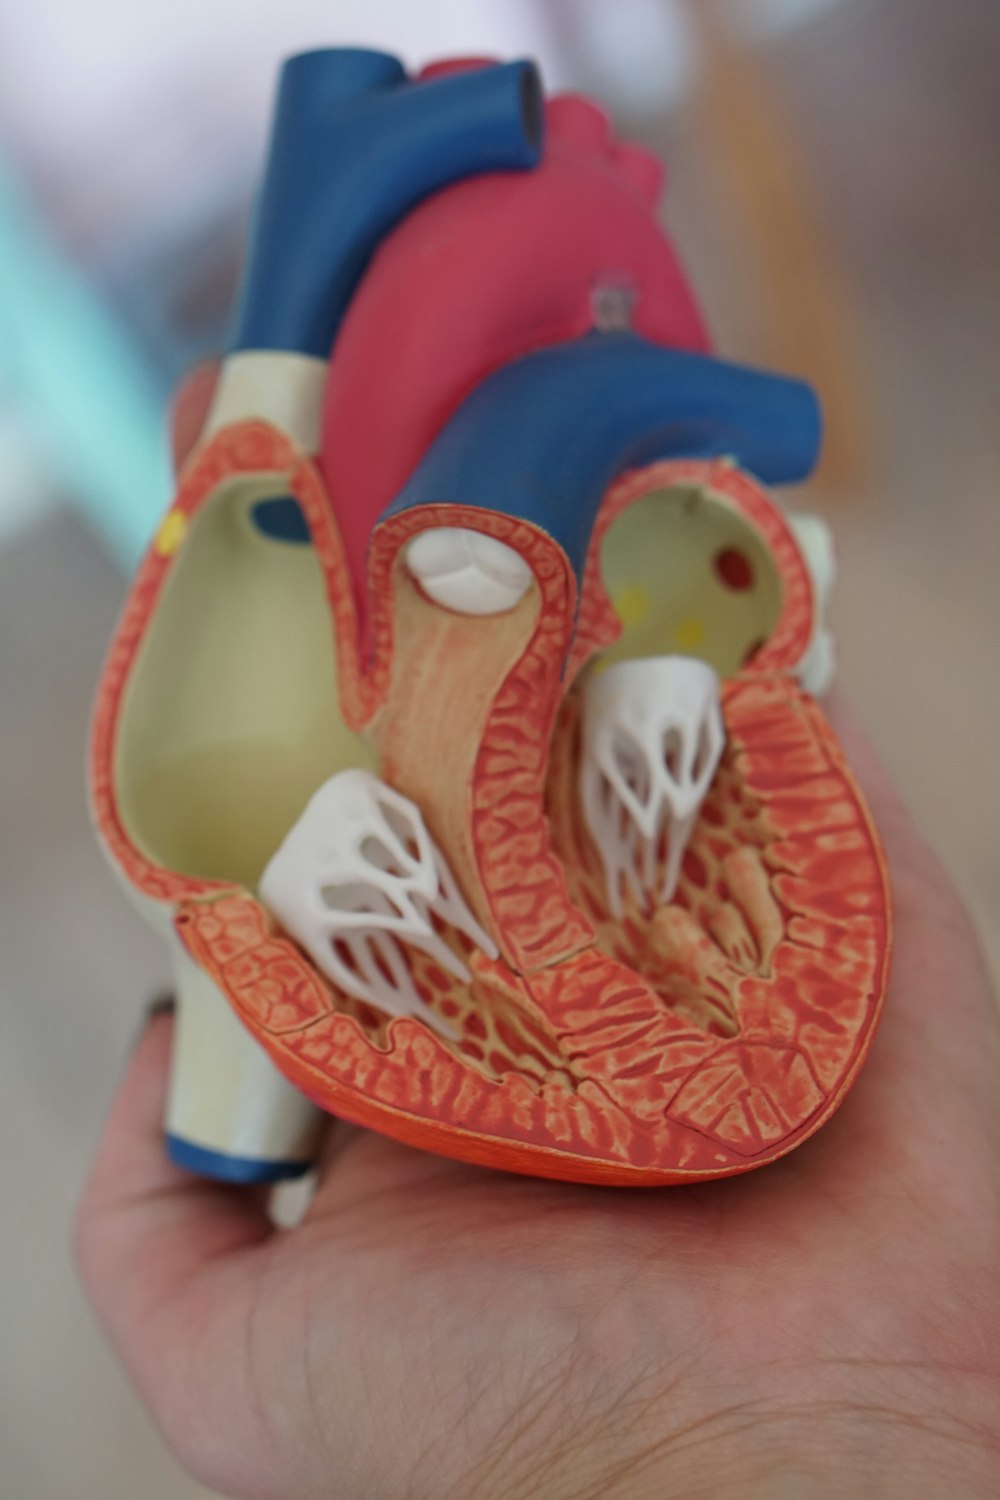 Strumento di apprendimento dell'anatomia del cuore umano